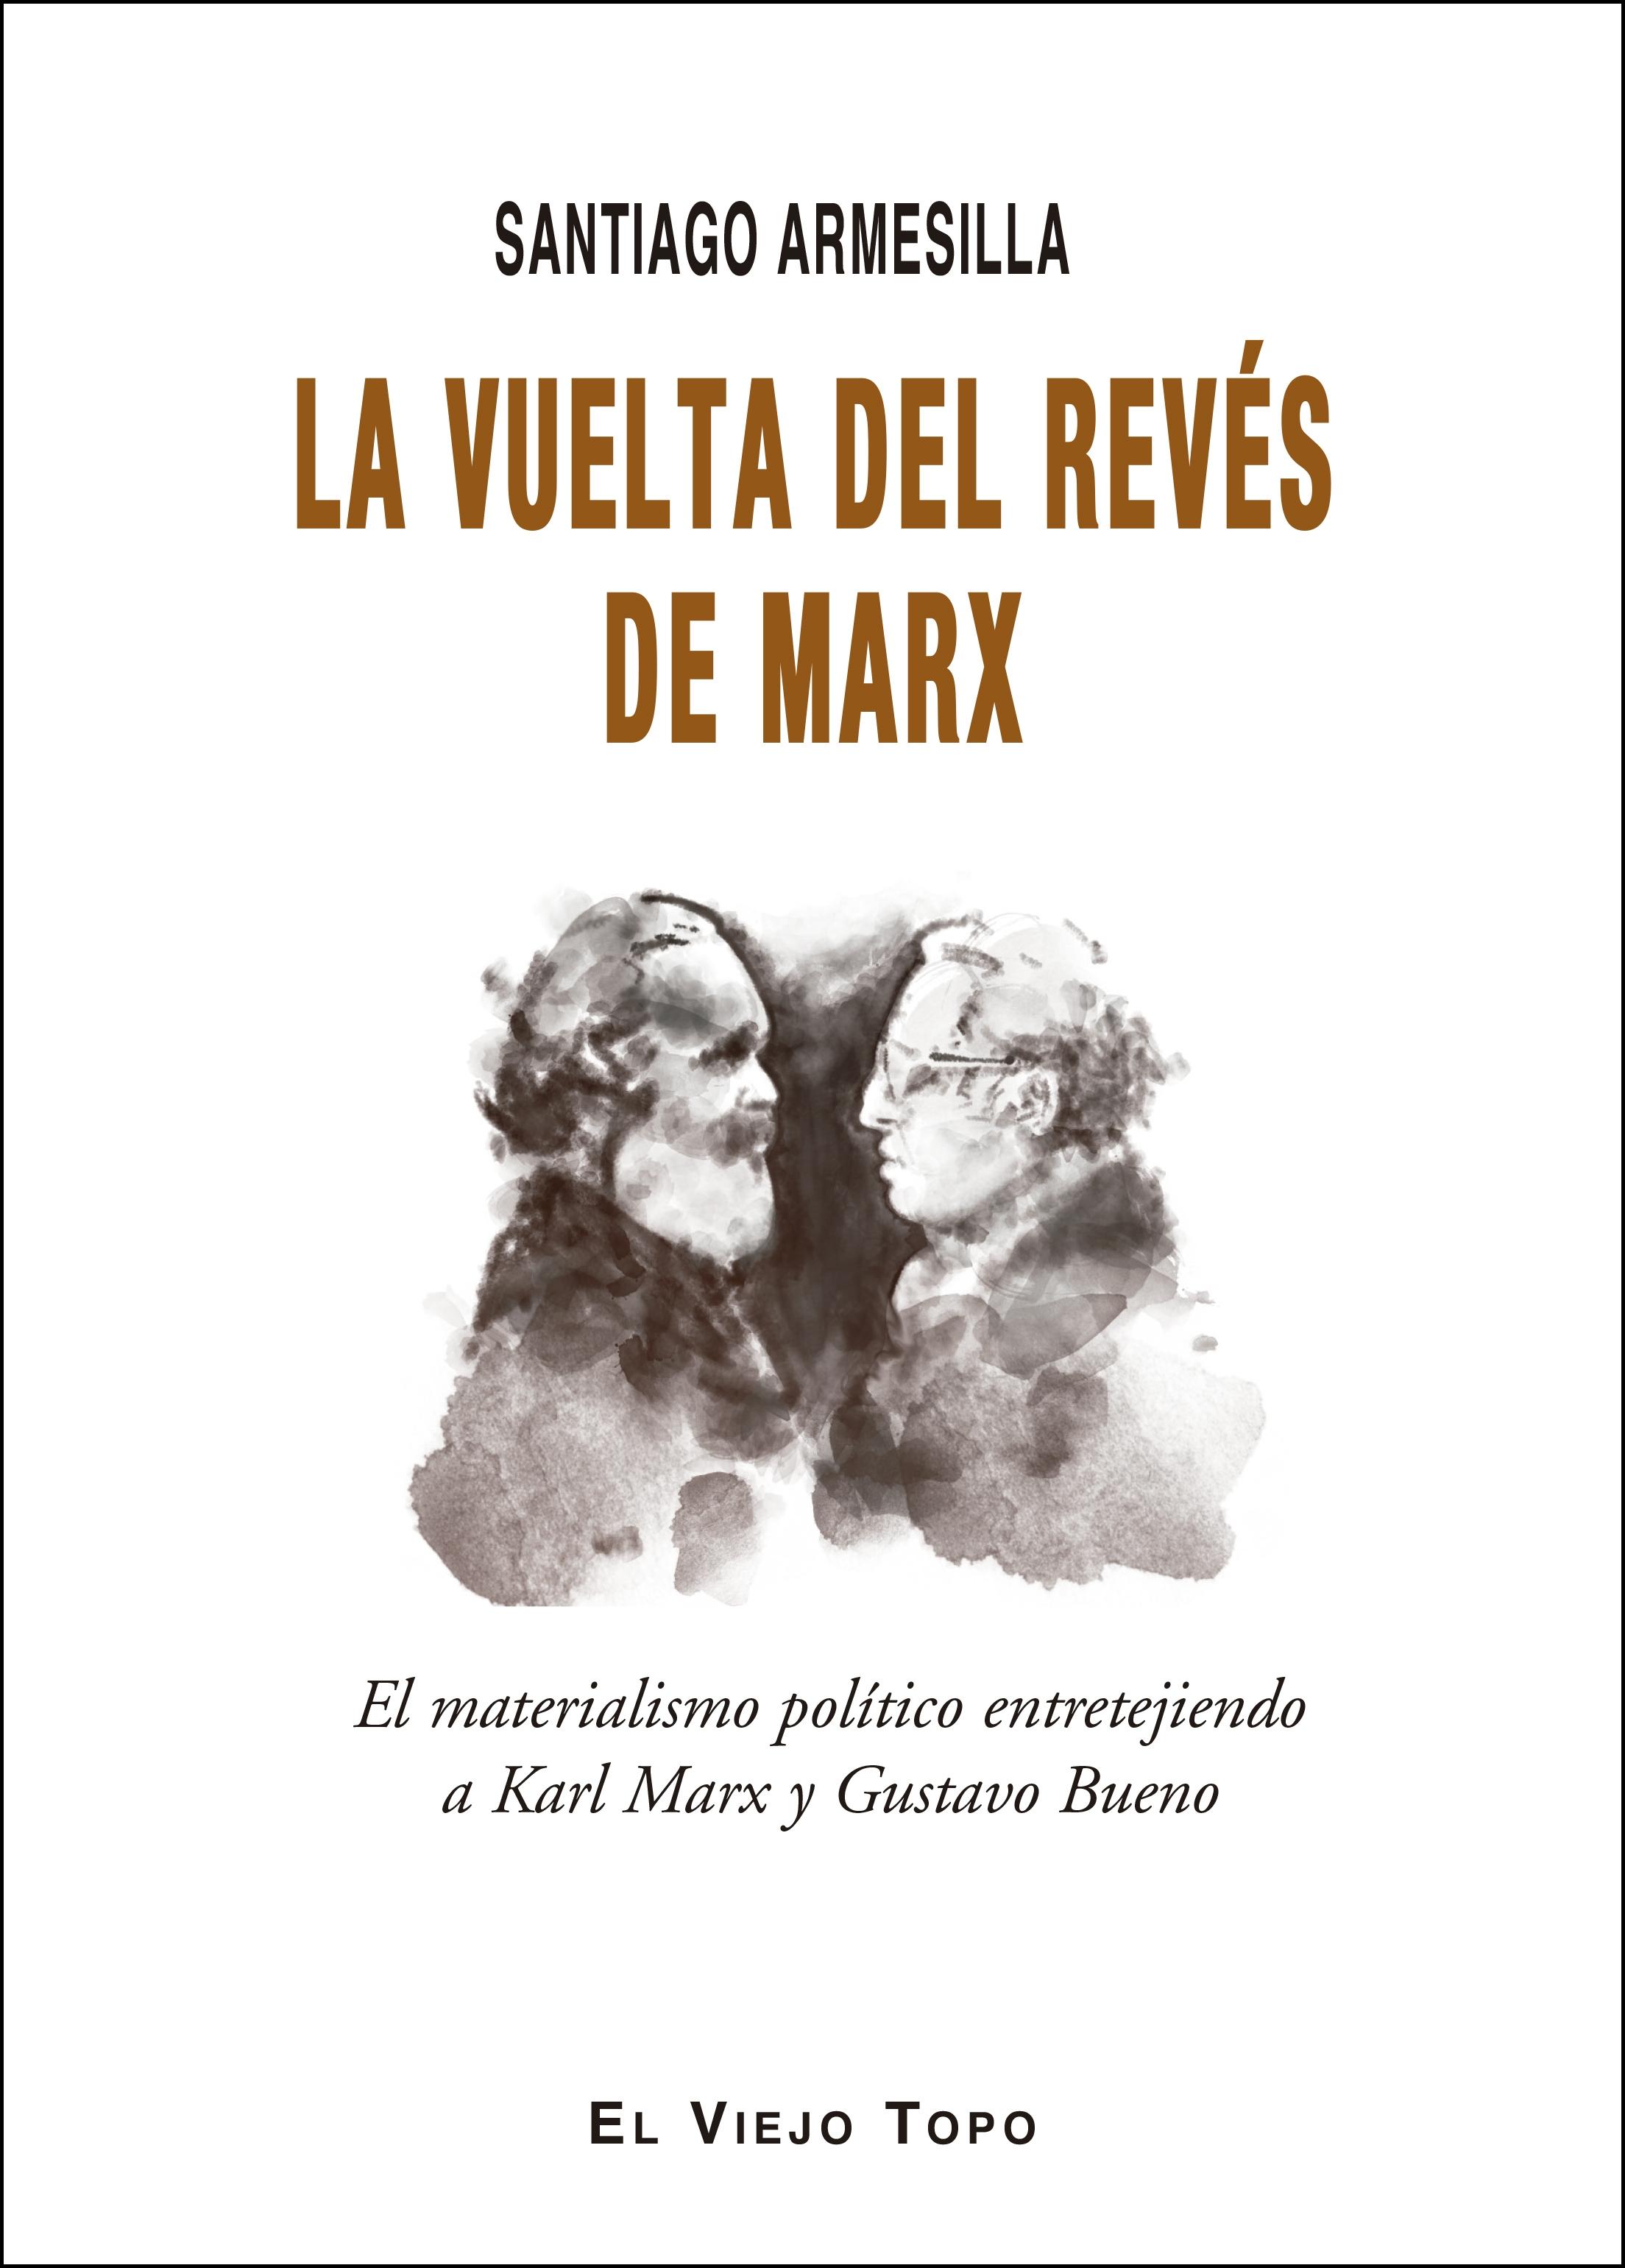 La Vuelta del Revés de Marx "El Materialismo Politico Entretejiendo a Karl Marx y Gustavo Bueno"